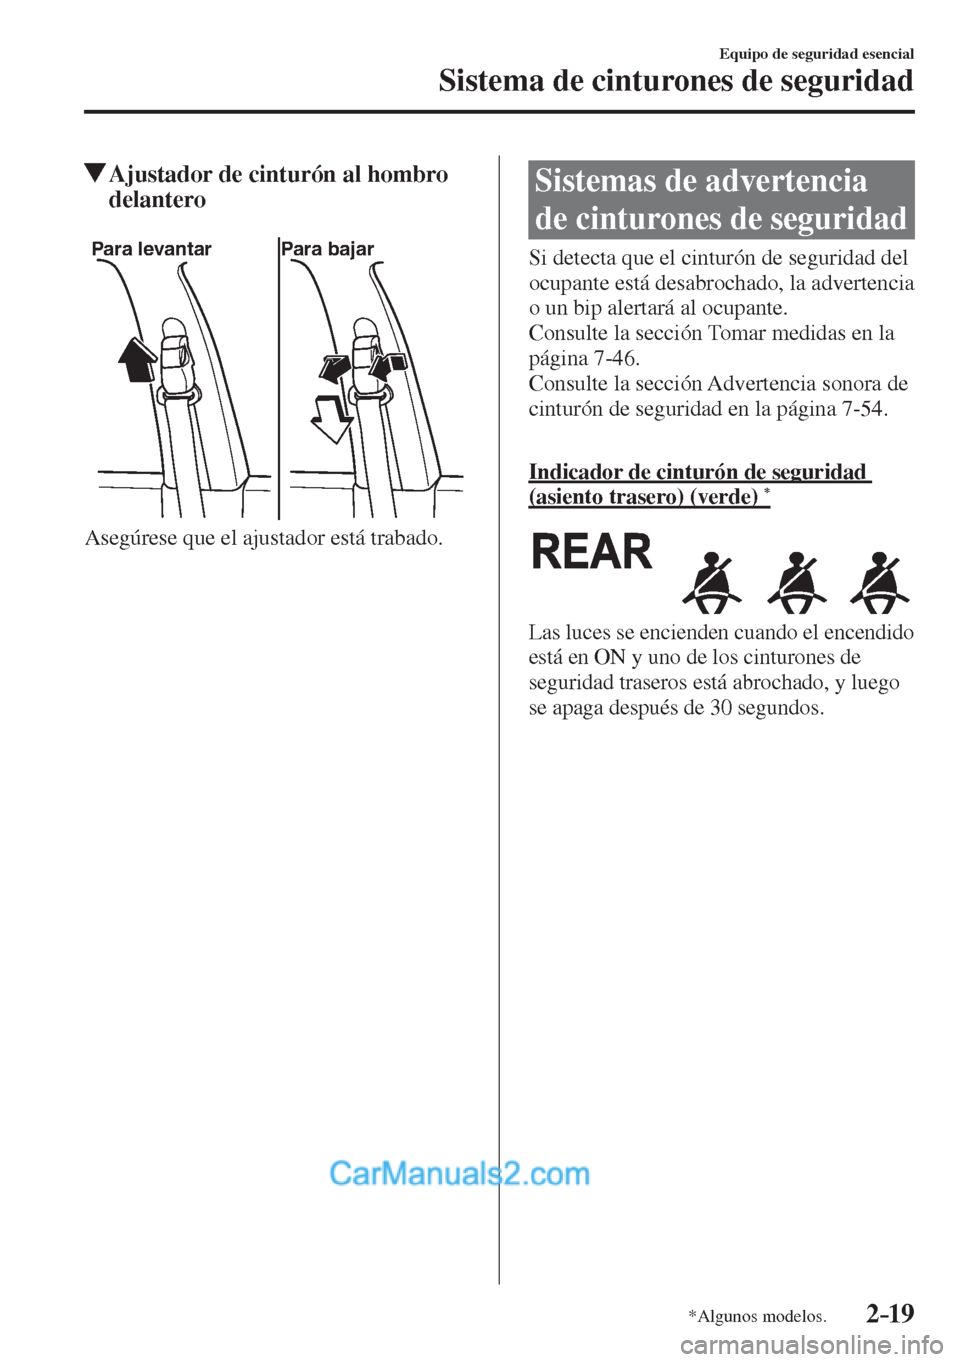 MAZDA MODEL 2 2017  Manual del propietario (in Spanish) 2–19
Equipo de seguridad esencial
Sistema de cinturones de seguridad
*Algunos modelos.
          Ajustador de cinturón al hombro 
delantero
   
Para levantar Para bajar
 
  Asegúrese que el ajusta